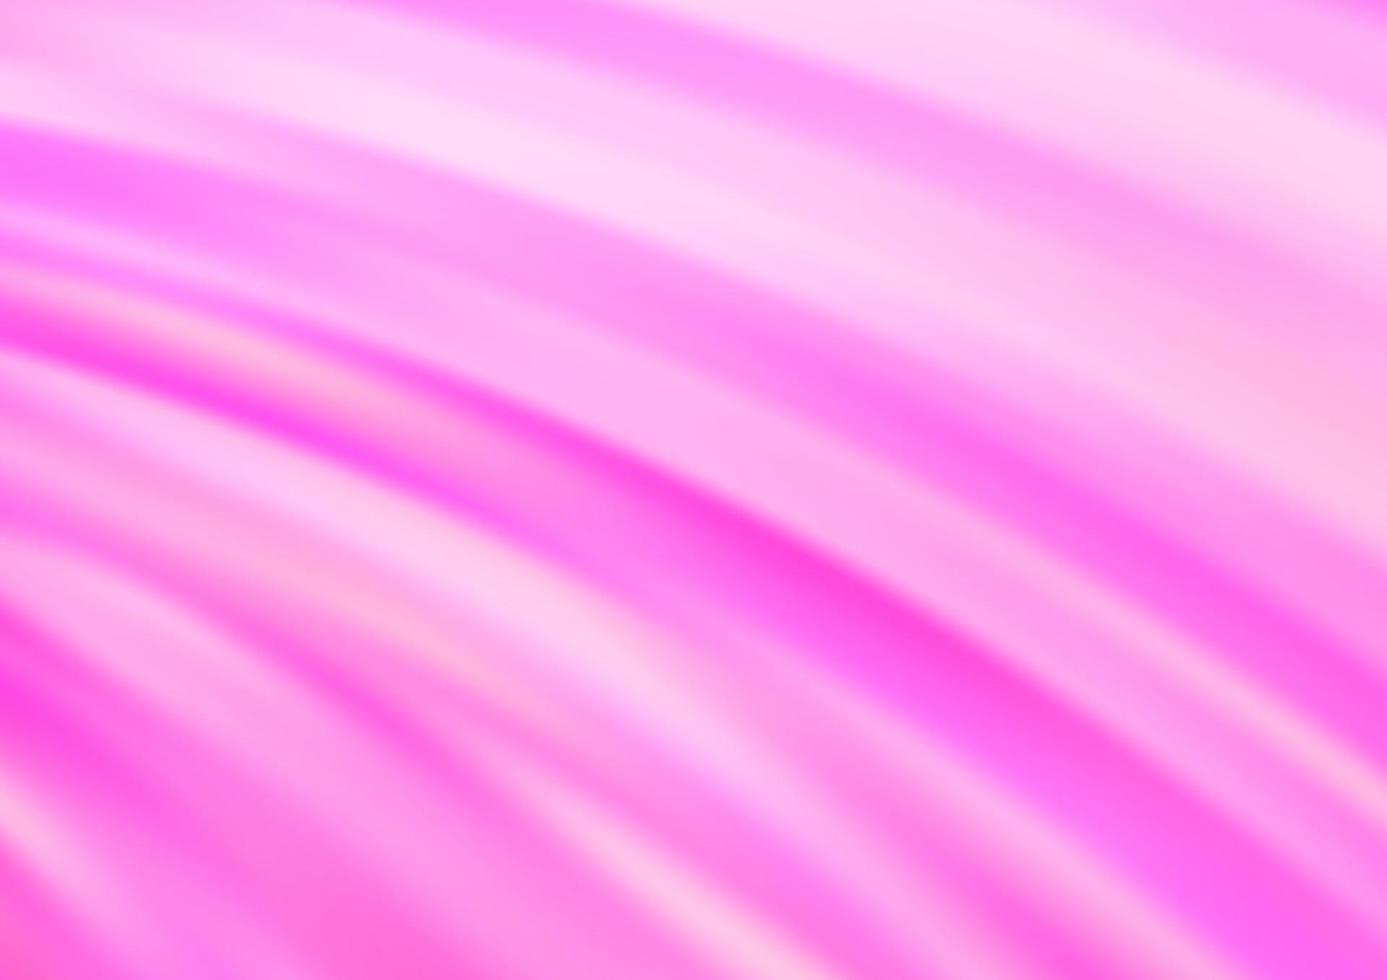 sfondo vettoriale rosa chiaro con linee astratte.